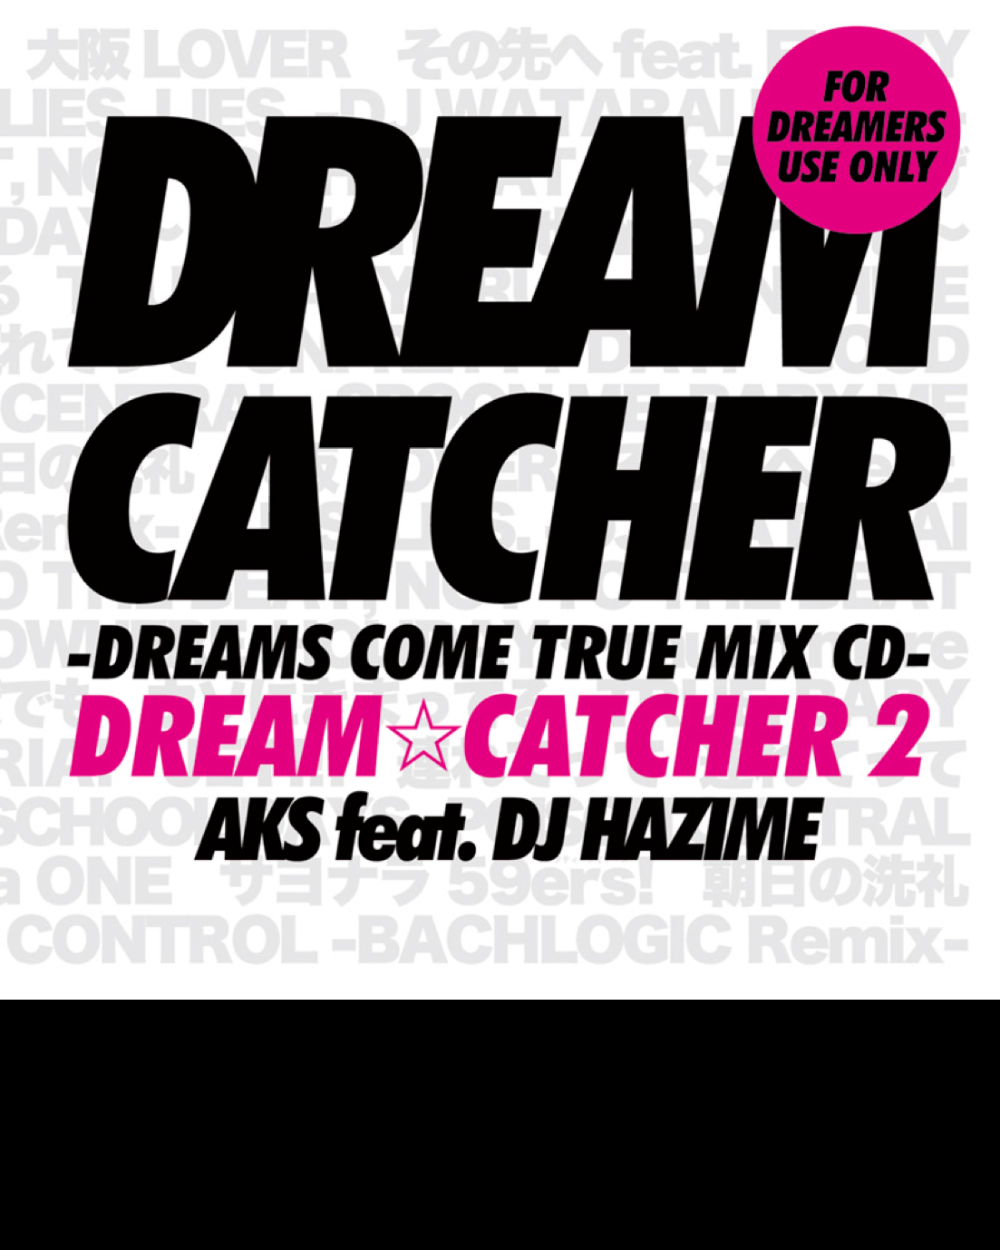 AKS feat DJ HAZIMEDREAM☆CATCHER 2 -DREAMS COME TRUE MIX CD-